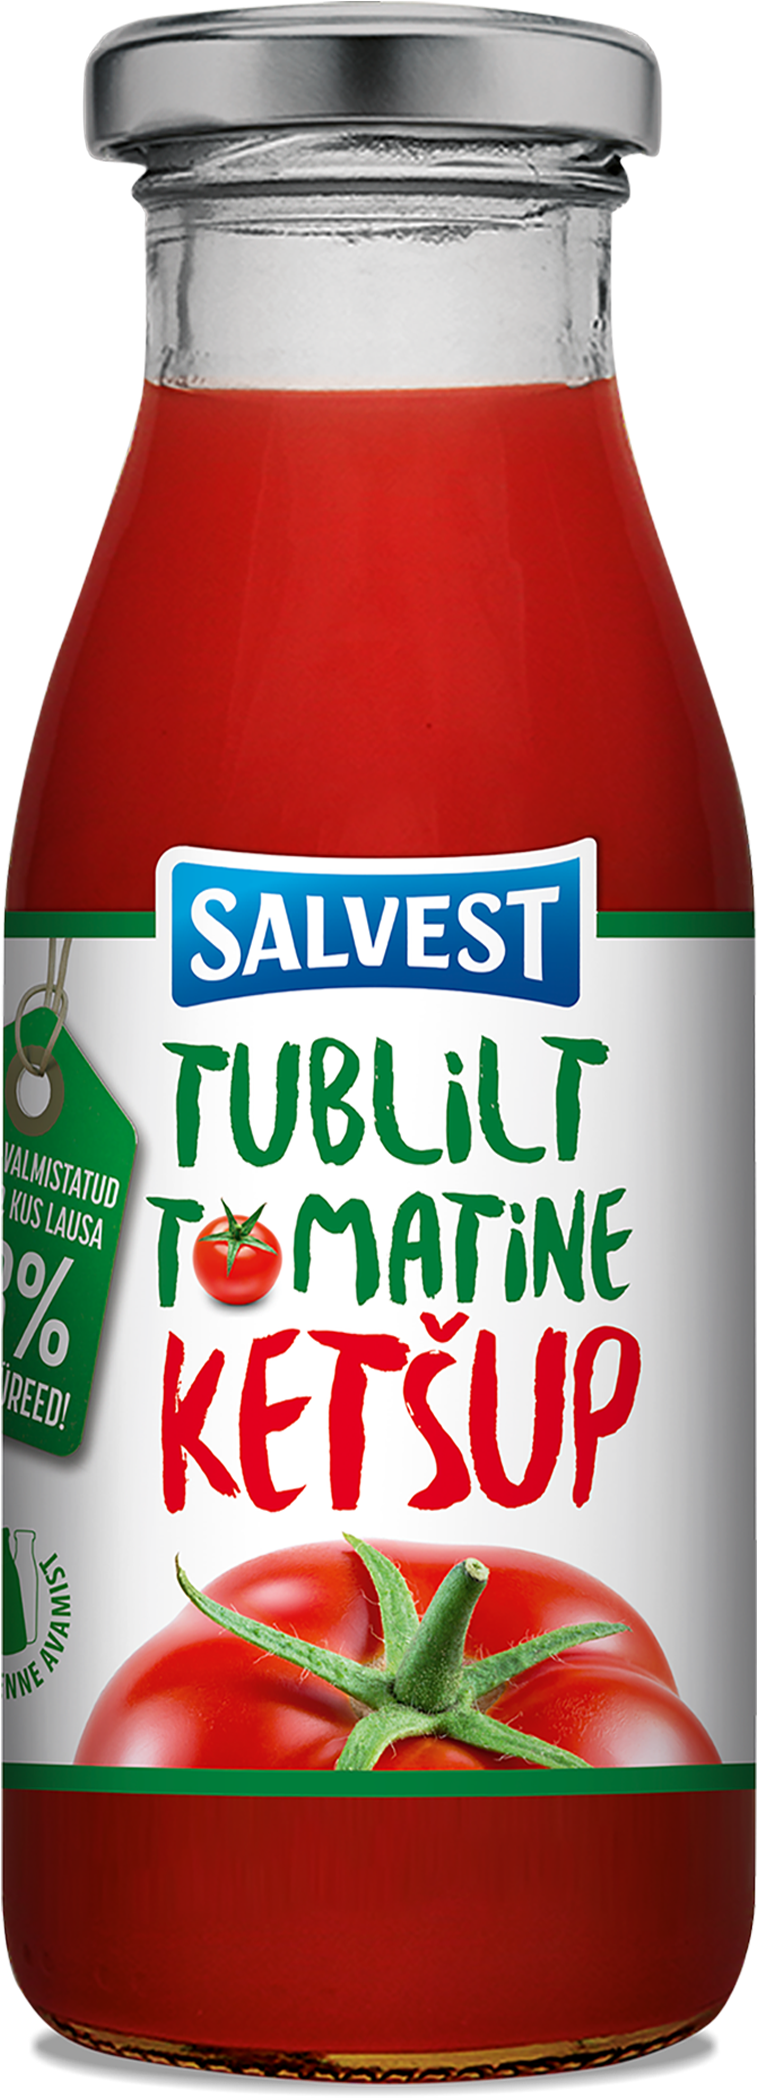 Salvest Tomatine Ketchup Bottle PNG image